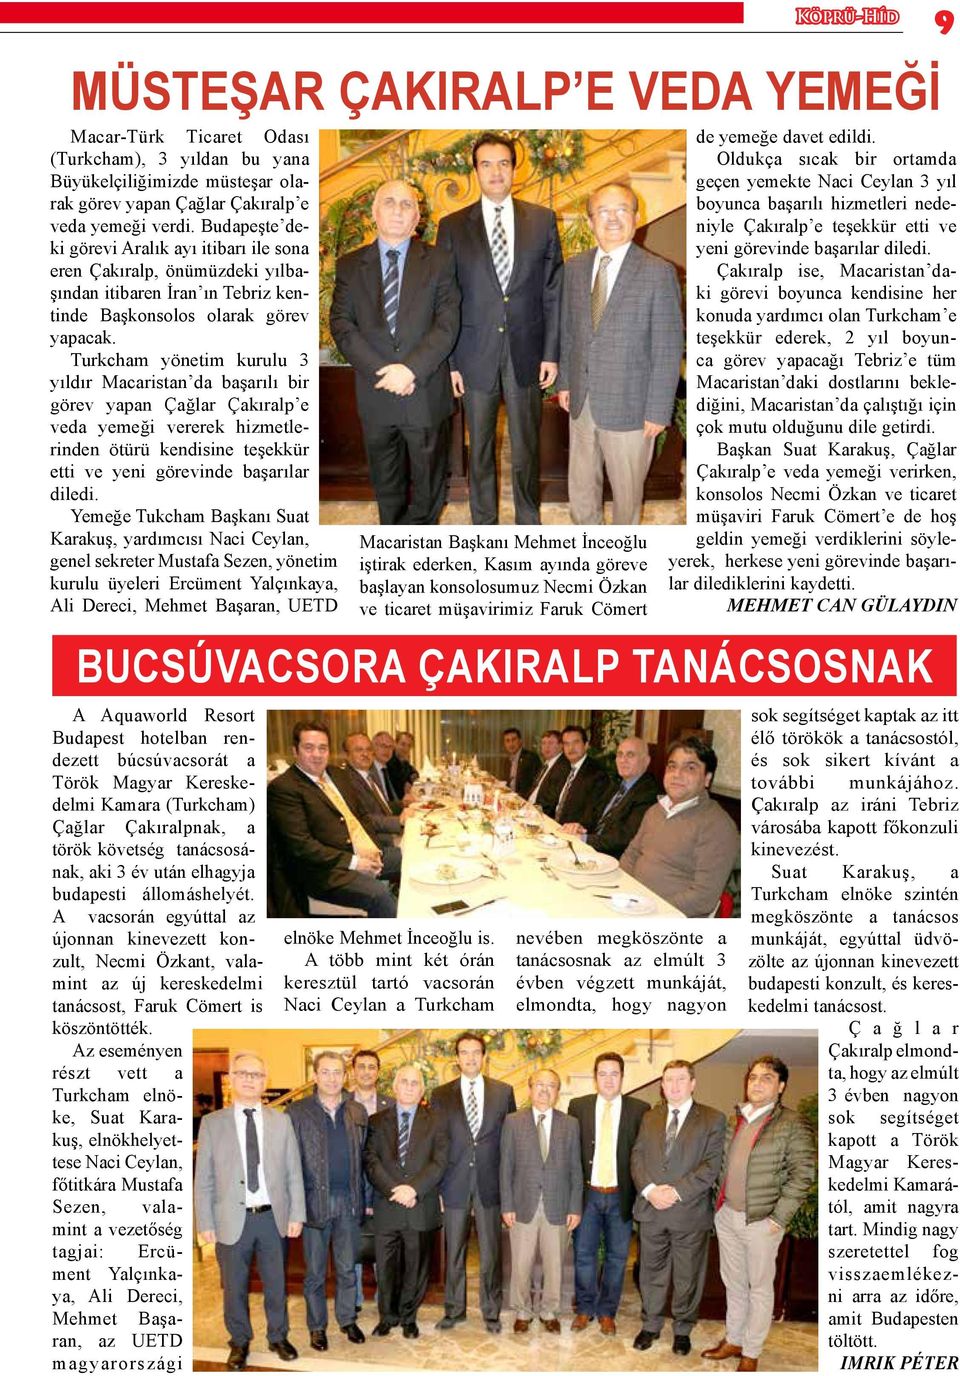 Turkcham yönetim kurulu 3 yıldır Macaristan da başarılı bir görev yapan Çağlar Çakıralp e veda yemeği vererek hizmetlerinden ötürü kendisine teşekkür etti ve yeni görevinde başarılar diledi.